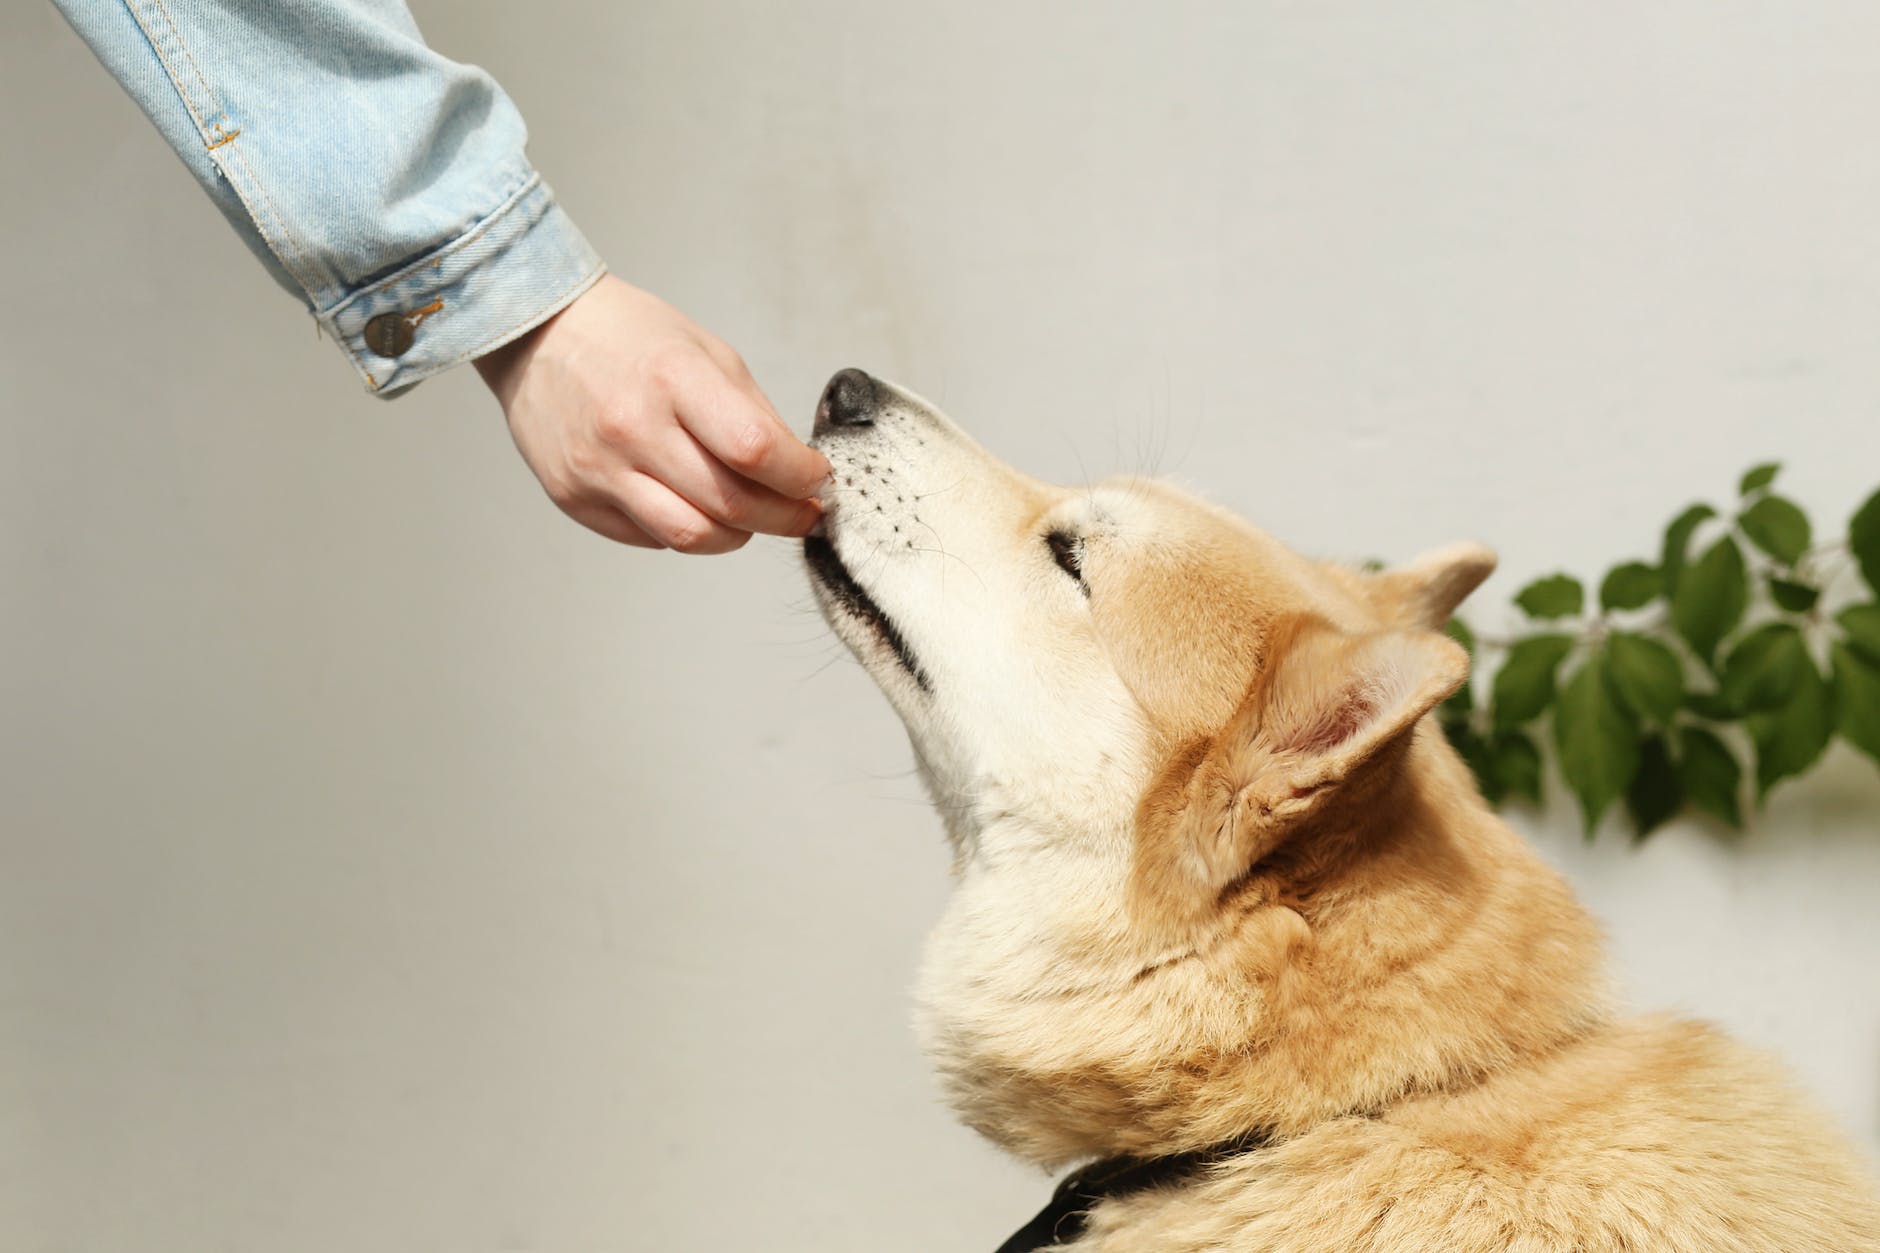 person feeding a pet dog